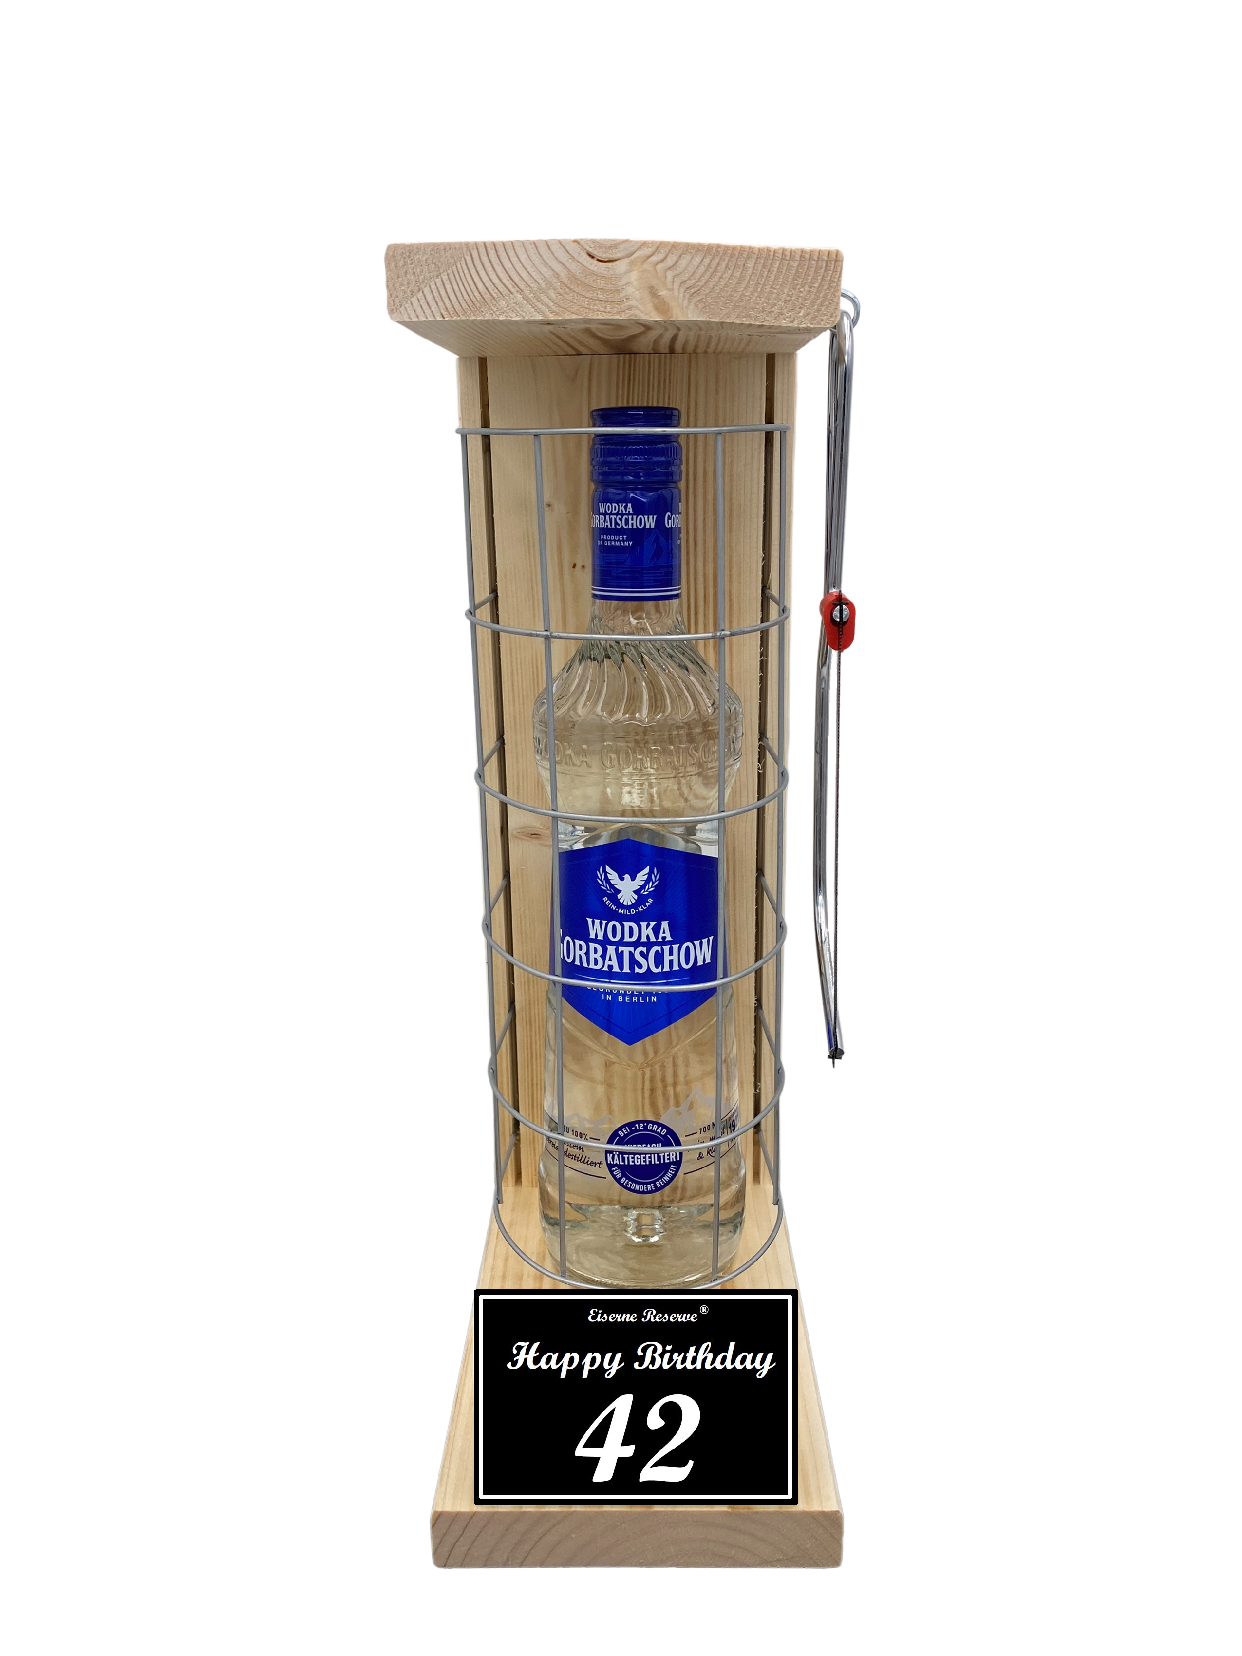 Wodka Geschenk zum 42 Geburtstag - Eiserne Reserve Gitterkäfig